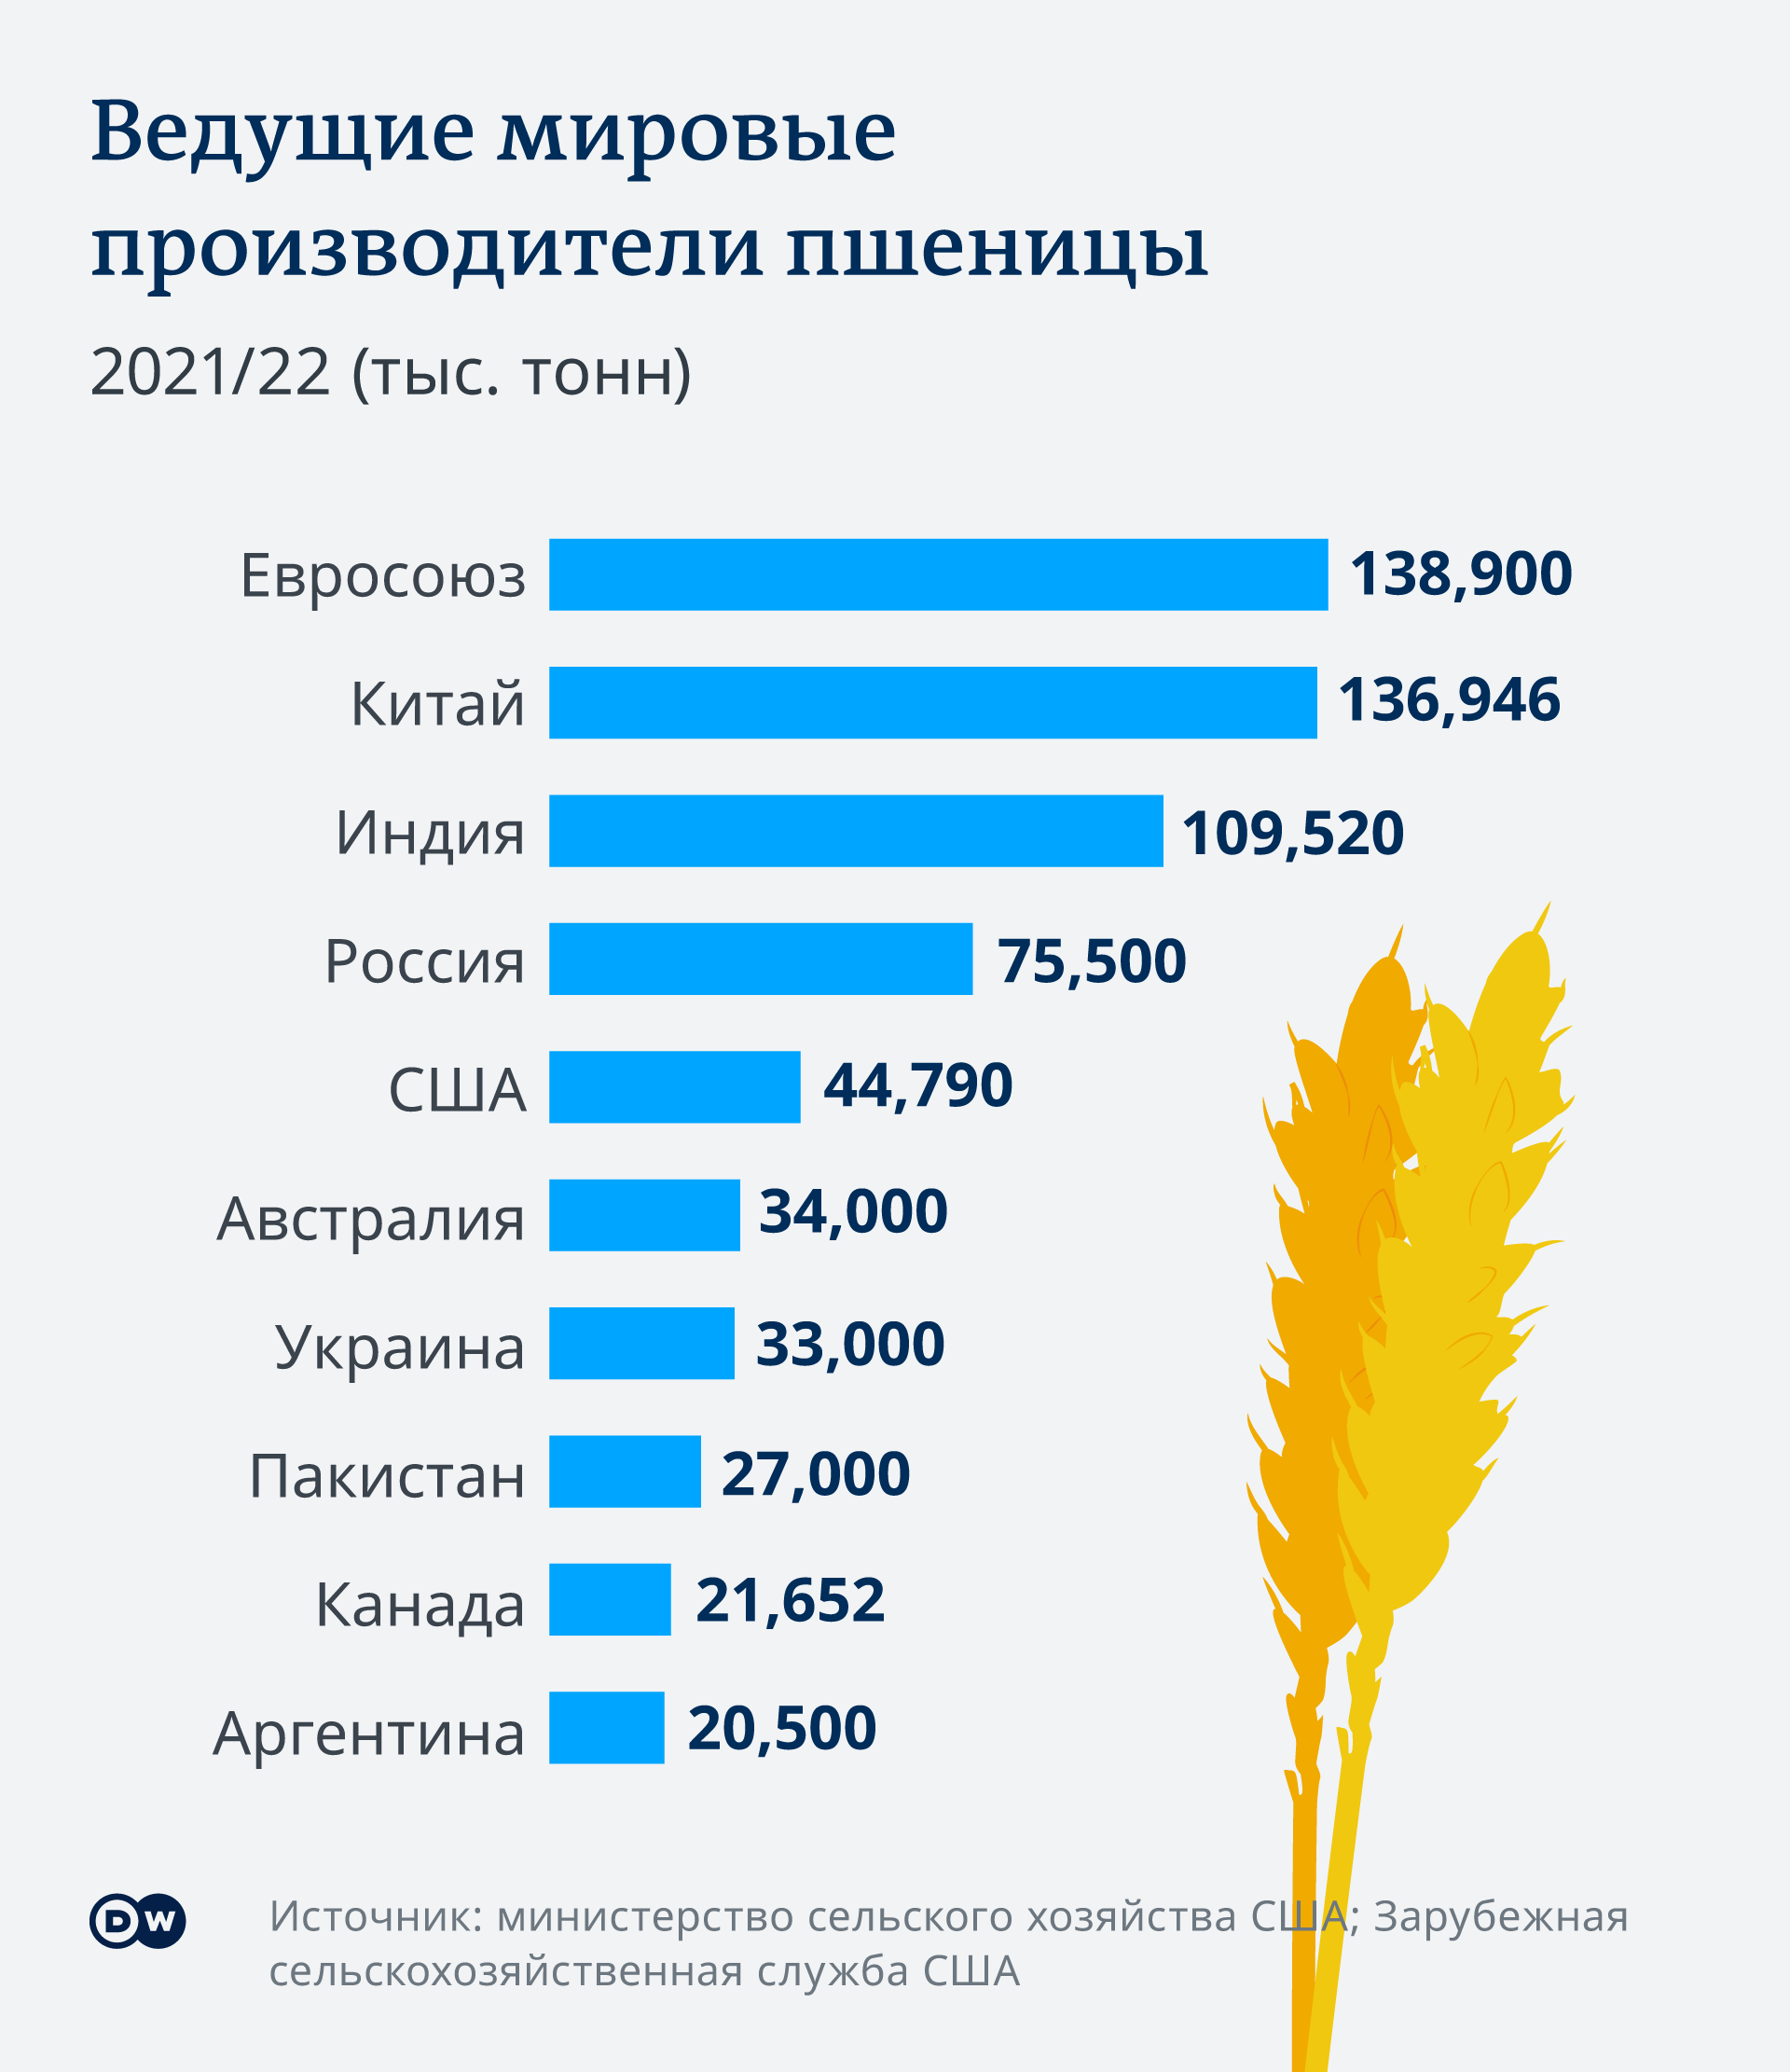 Инфографика Ведущие мировые производители пшеницы